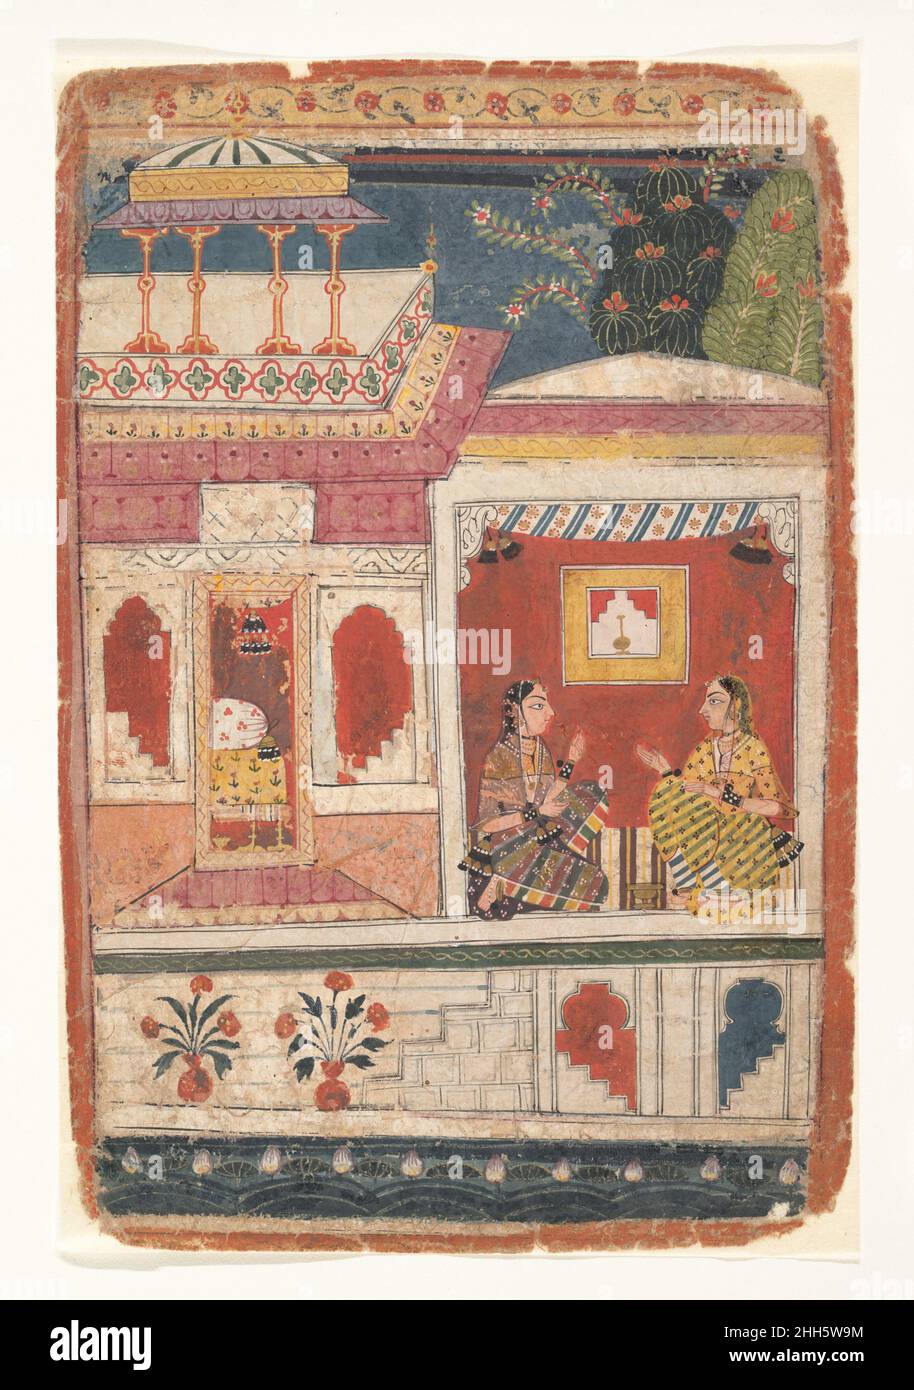 Radha und ihr Vertrauter sitzen in einem offenen Raum: Seite aus einer zerstreuten Rasikapriya Ca. 1680–90 Indien (Madhya Pradesh, Malwa) in der Rasikapriya thematisiert der Dichter Keshav das die Liebe in all ihren verschiedenen Aspekten, wobei er sich auf geheime Wünsche und ihre äußeren Erscheinungsformen konzentriert. Hier spricht Radha mit ihrem Vertrauten und ihrem Mitstreiter und arrangiert zweifellos ein geheimes Treffen mit ihrem Geliebten Krishna. Details wie die stilisierten Blumen an der Basis des Gebäudes sowie die Anfänge der besonderen Tiefe in der Architektur gesehen deuten auf den Kontakt mit den Malatelier der Moguln.. Radha und ihr Vertrauter S Stockfoto